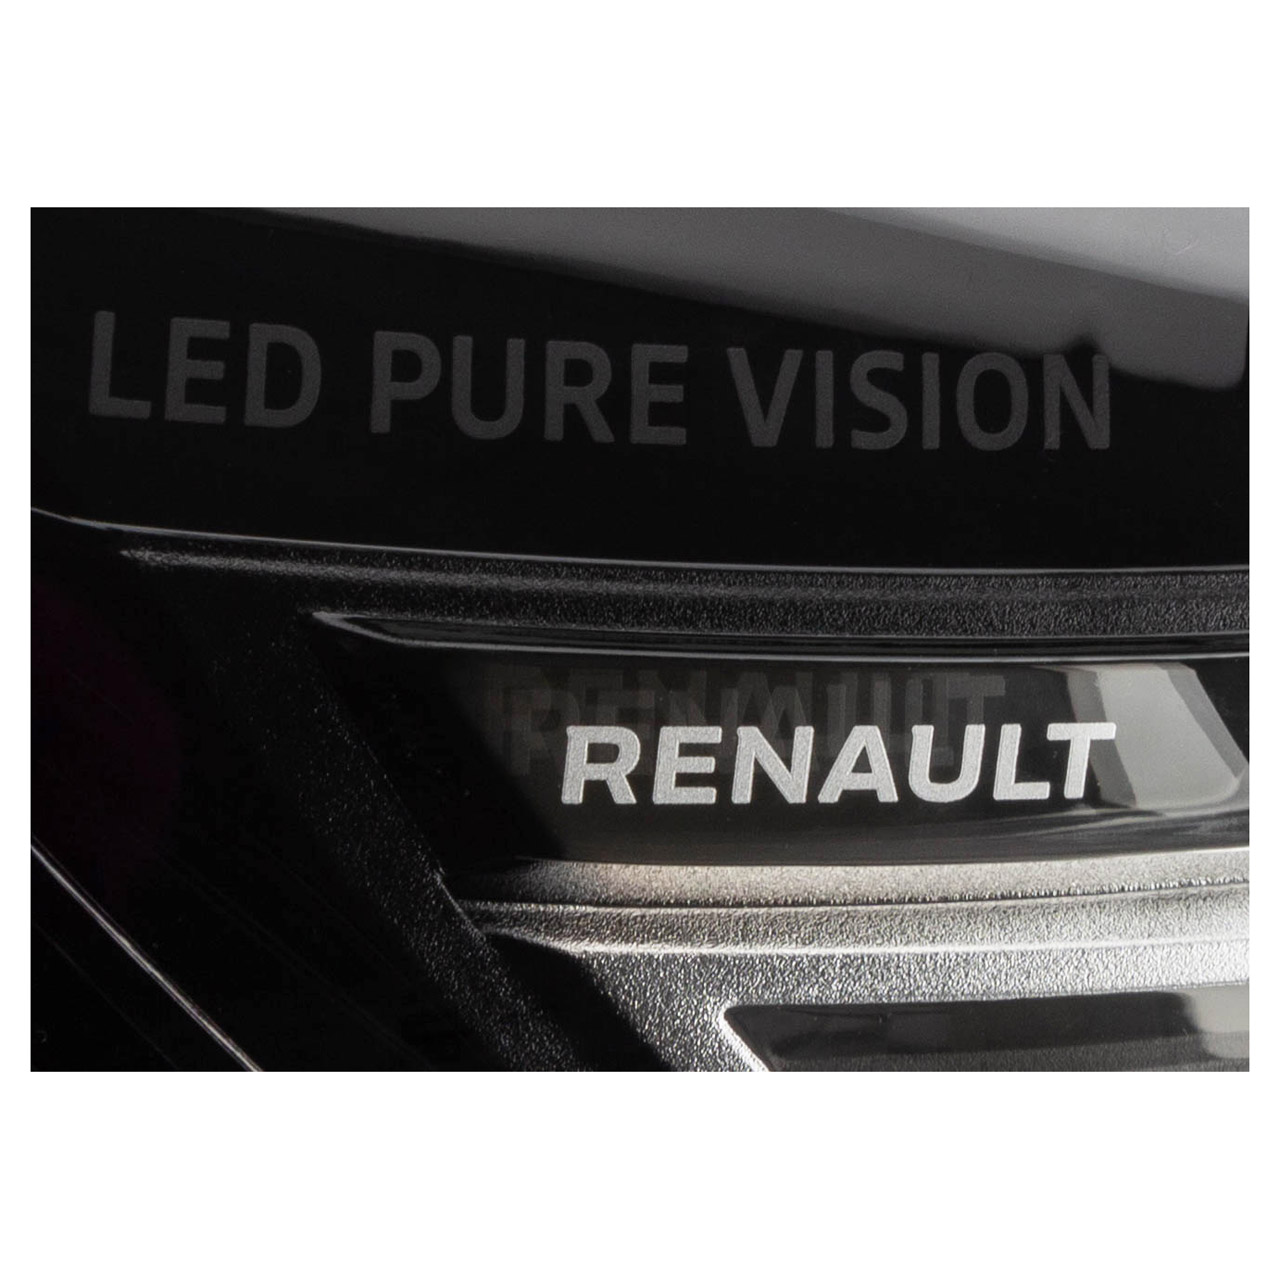 ORIGINAL Renault LED Hauptscheinwerfer Scheinwerfer Clio 5 B7 vorne rechts260100902R